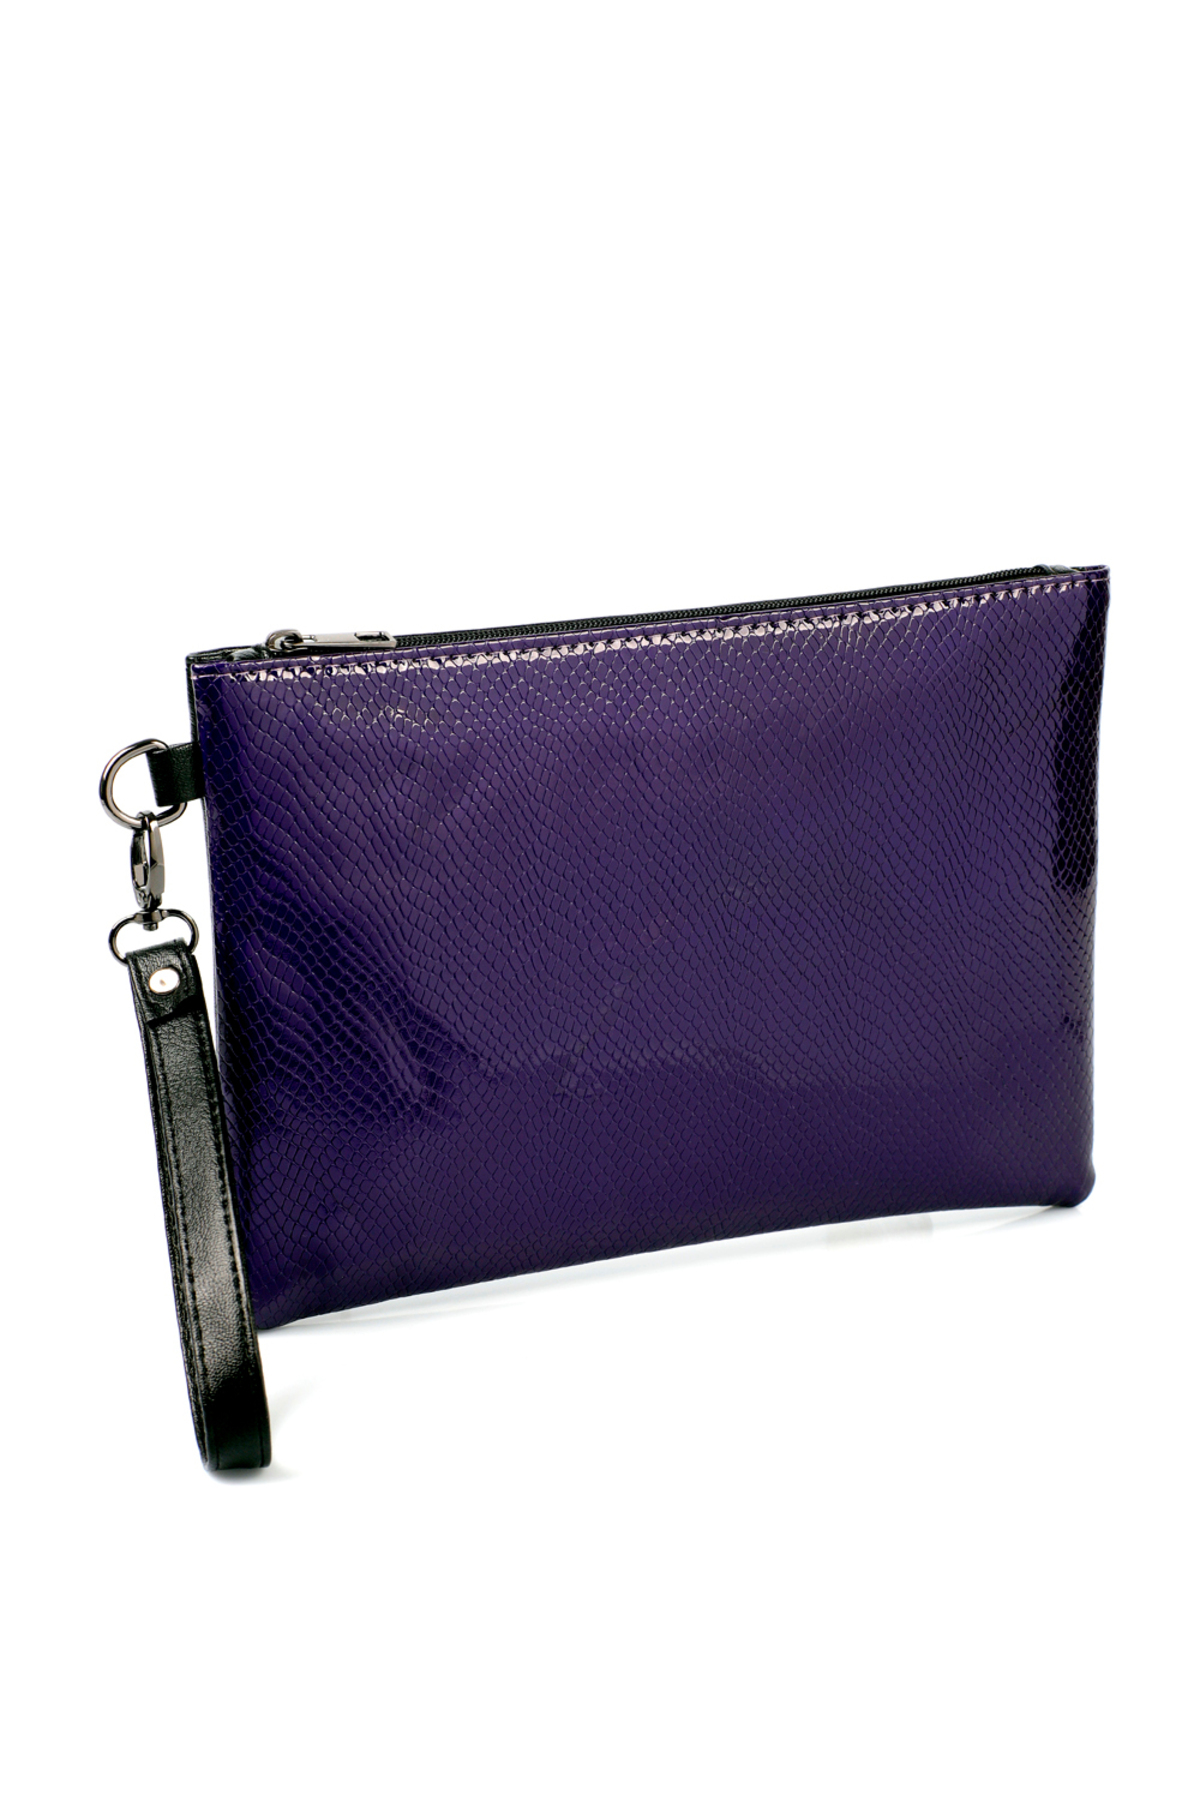 Levně Capone Outfitters Paris Women's Clutch Portfolio Purple Bag